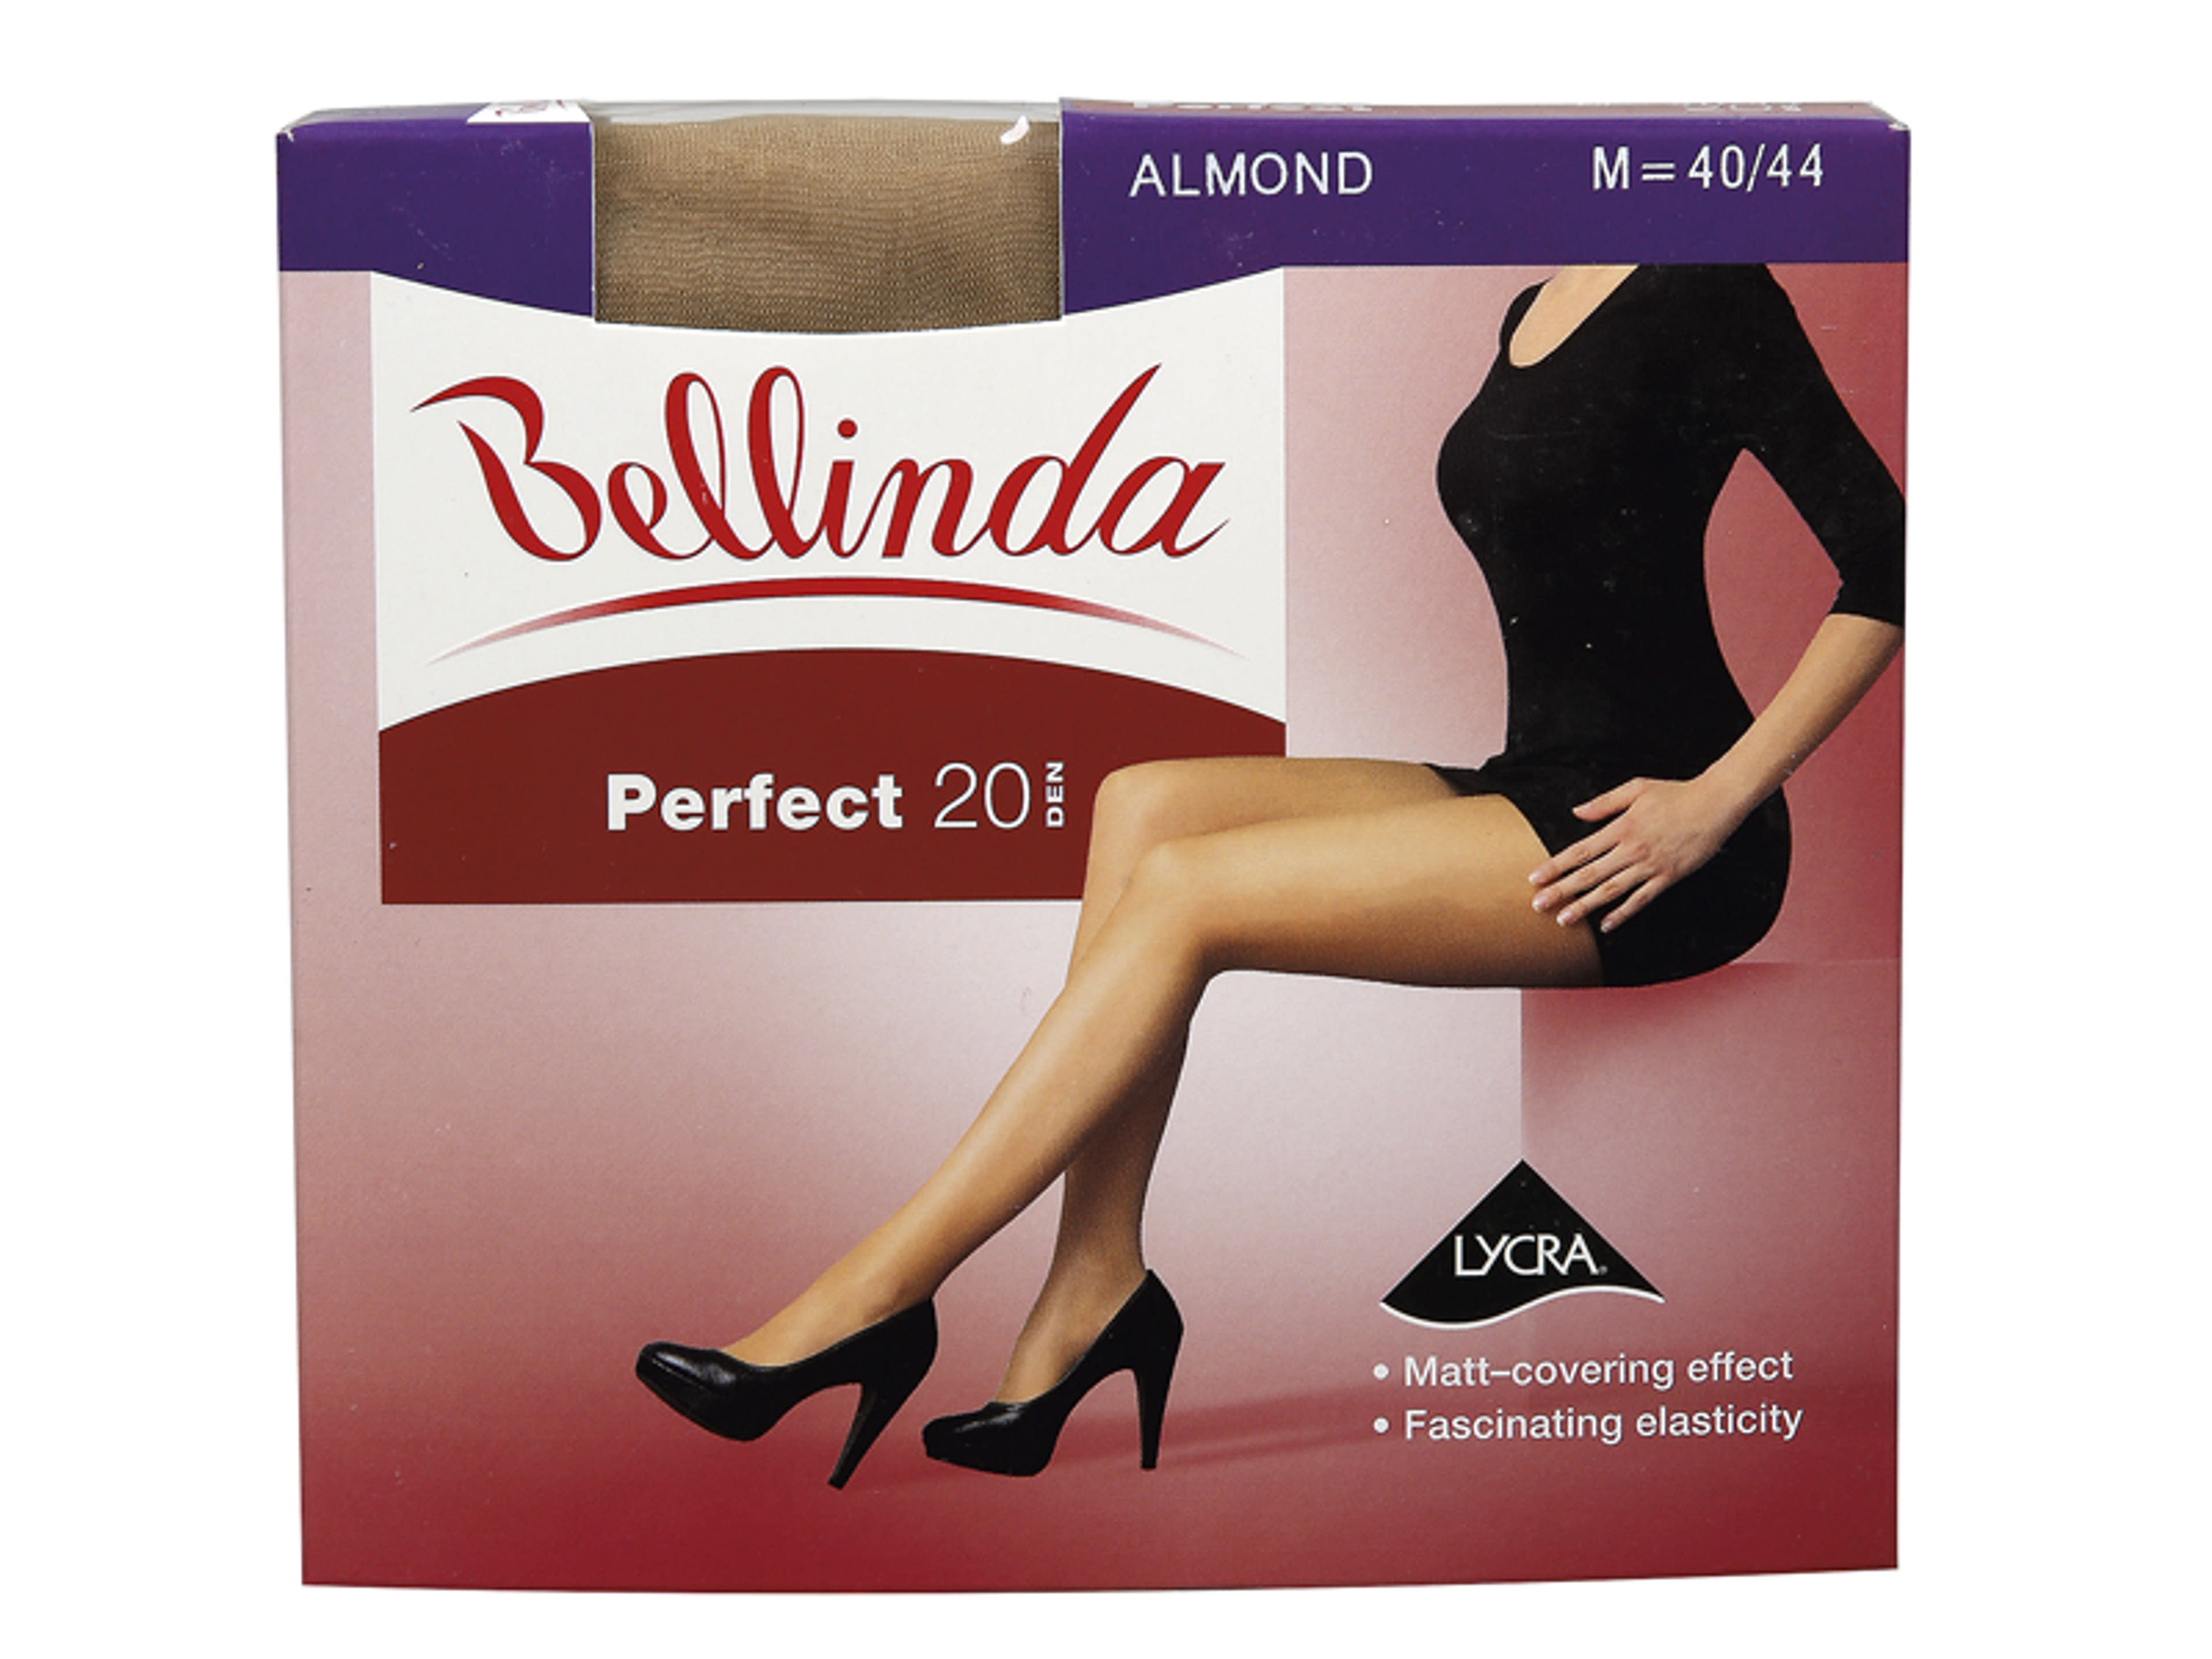 Bellinda Perfect 20 Den Almond M Harisnya - 1 db-1